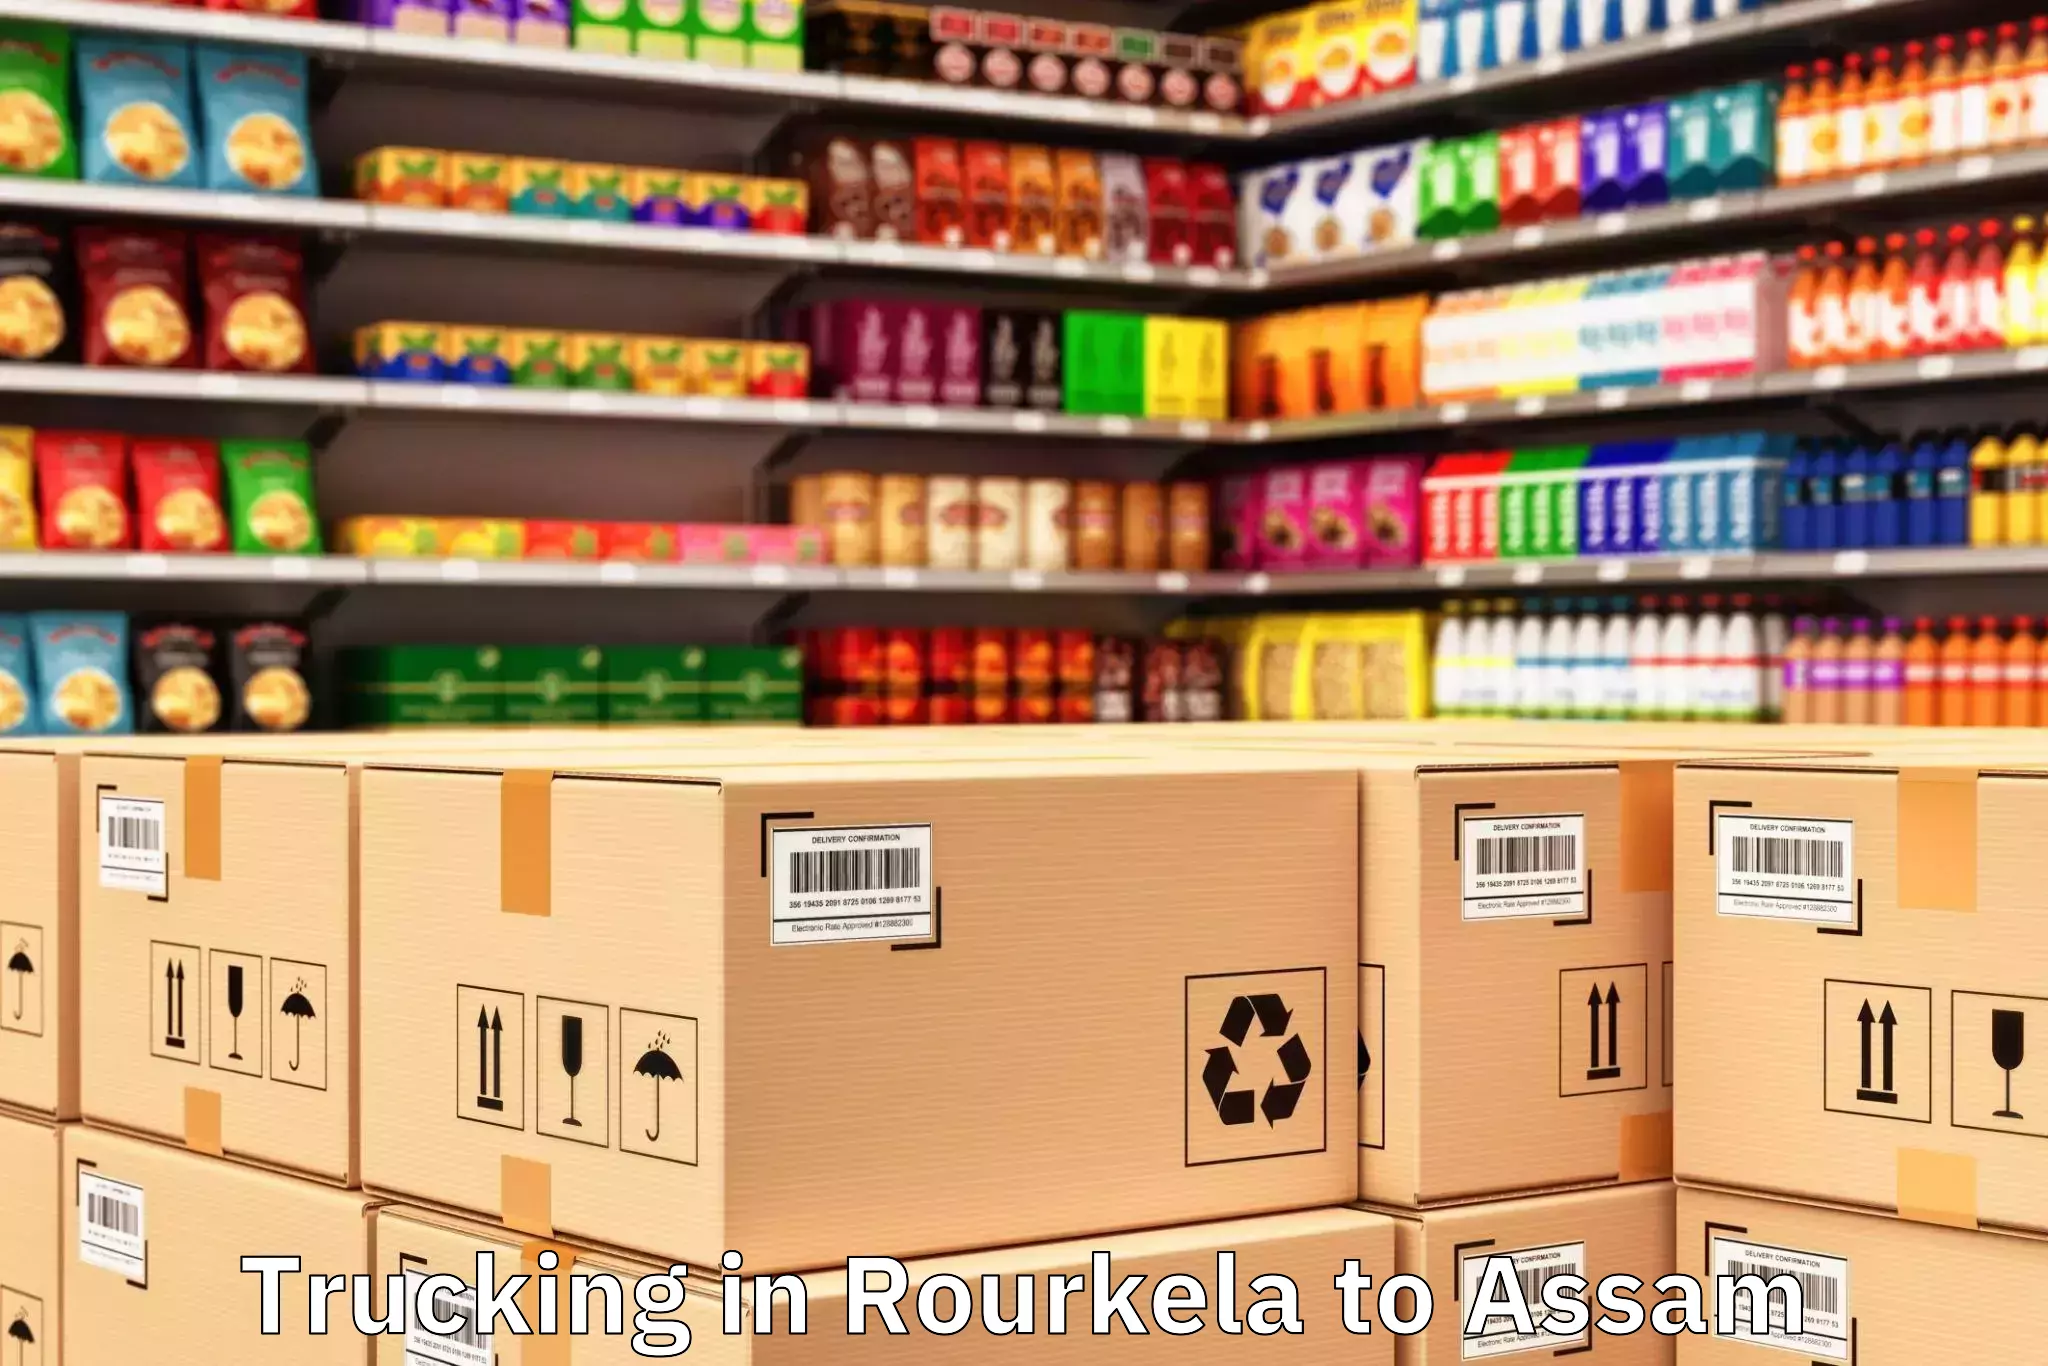 Professional Rourkela to Bajali Trucking